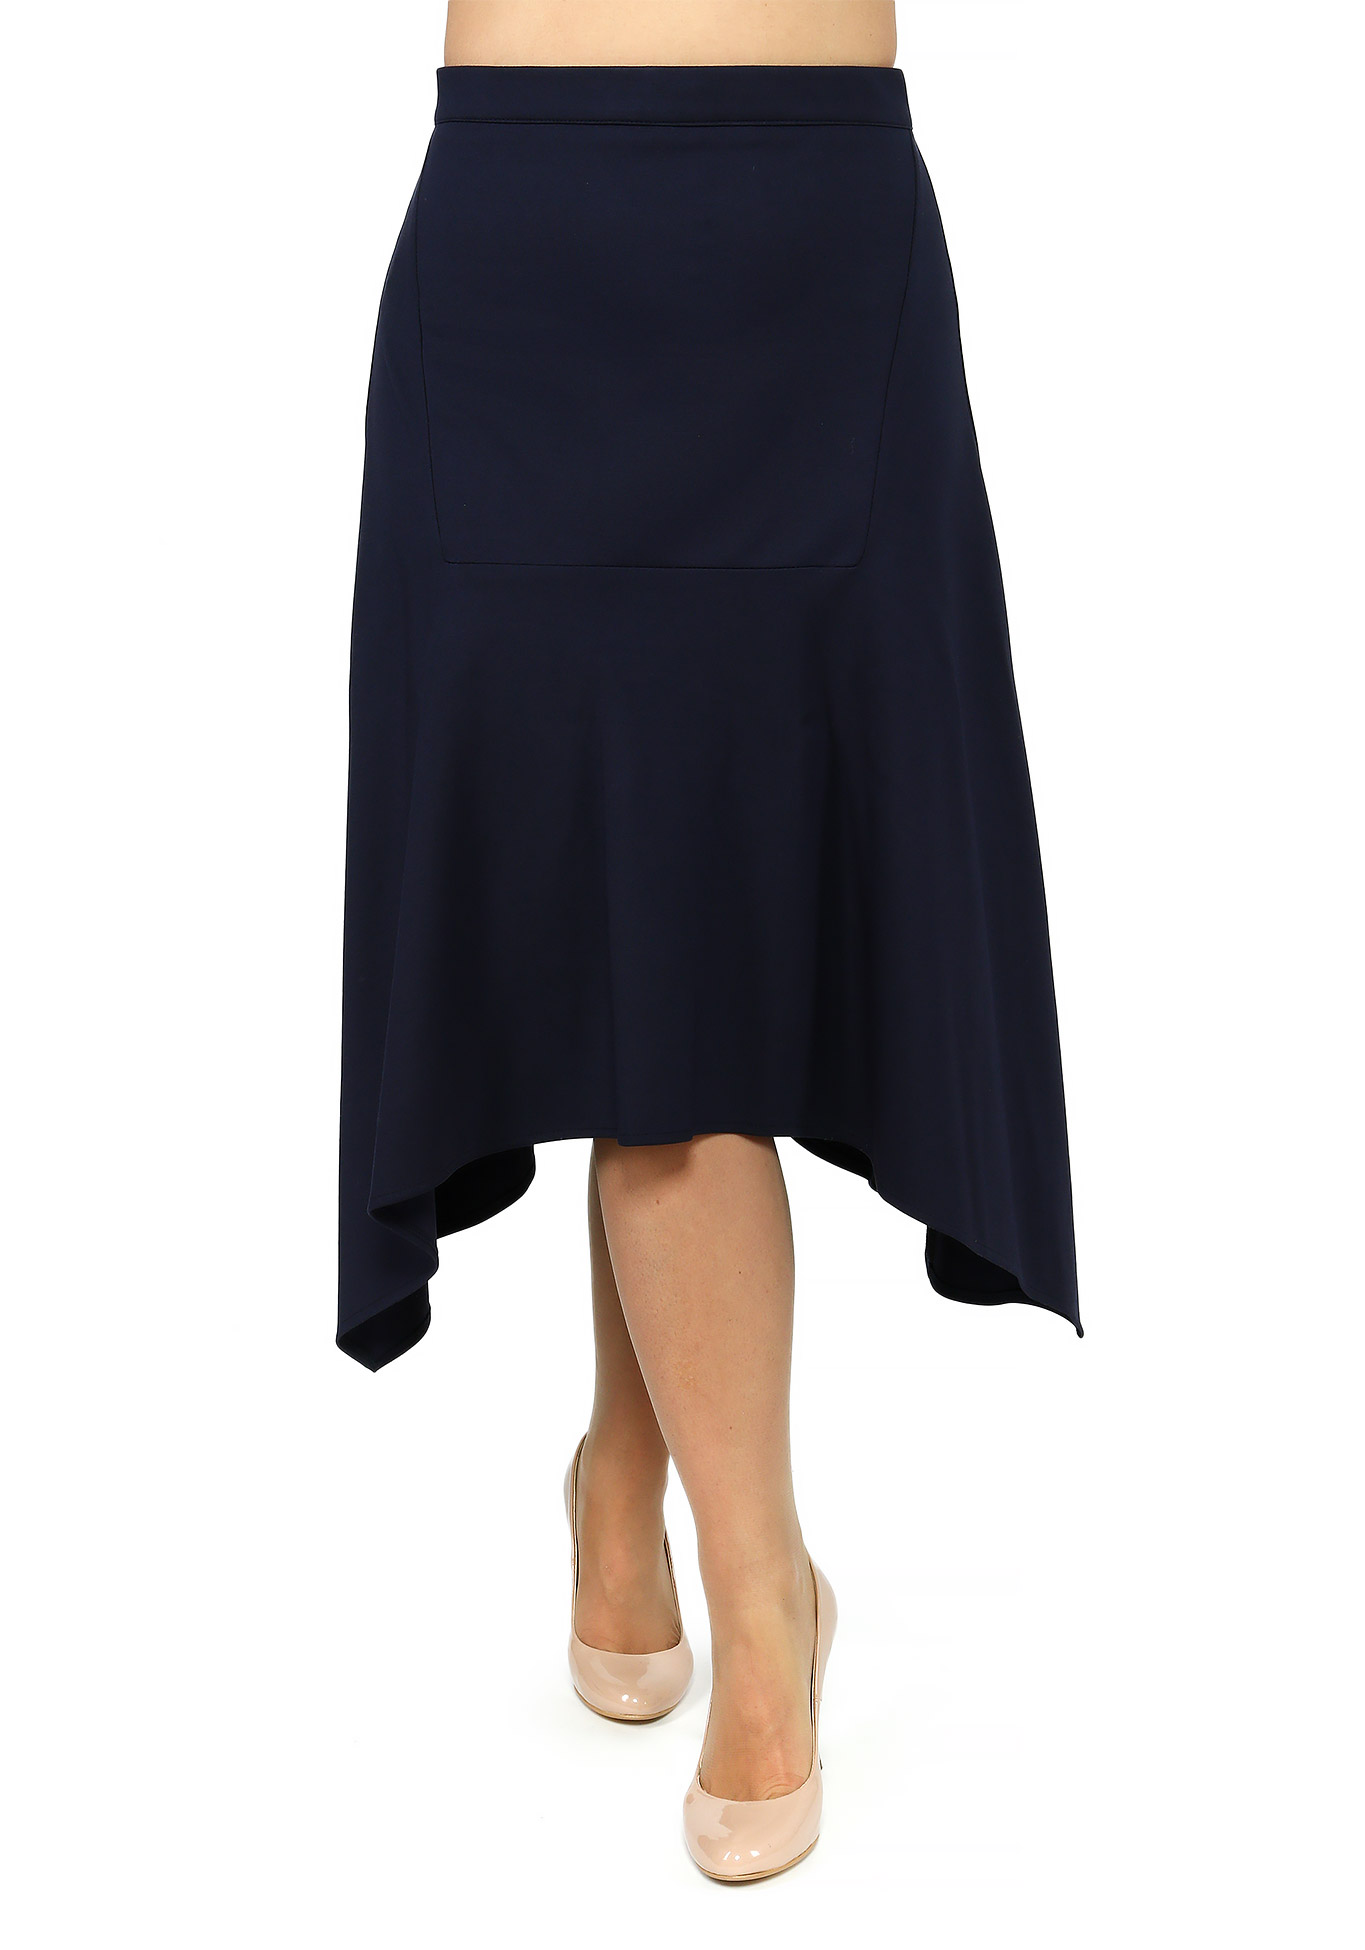 Юбка женская с асимметричным низом юбка с асимметричным воланом отделка неполным переплетением